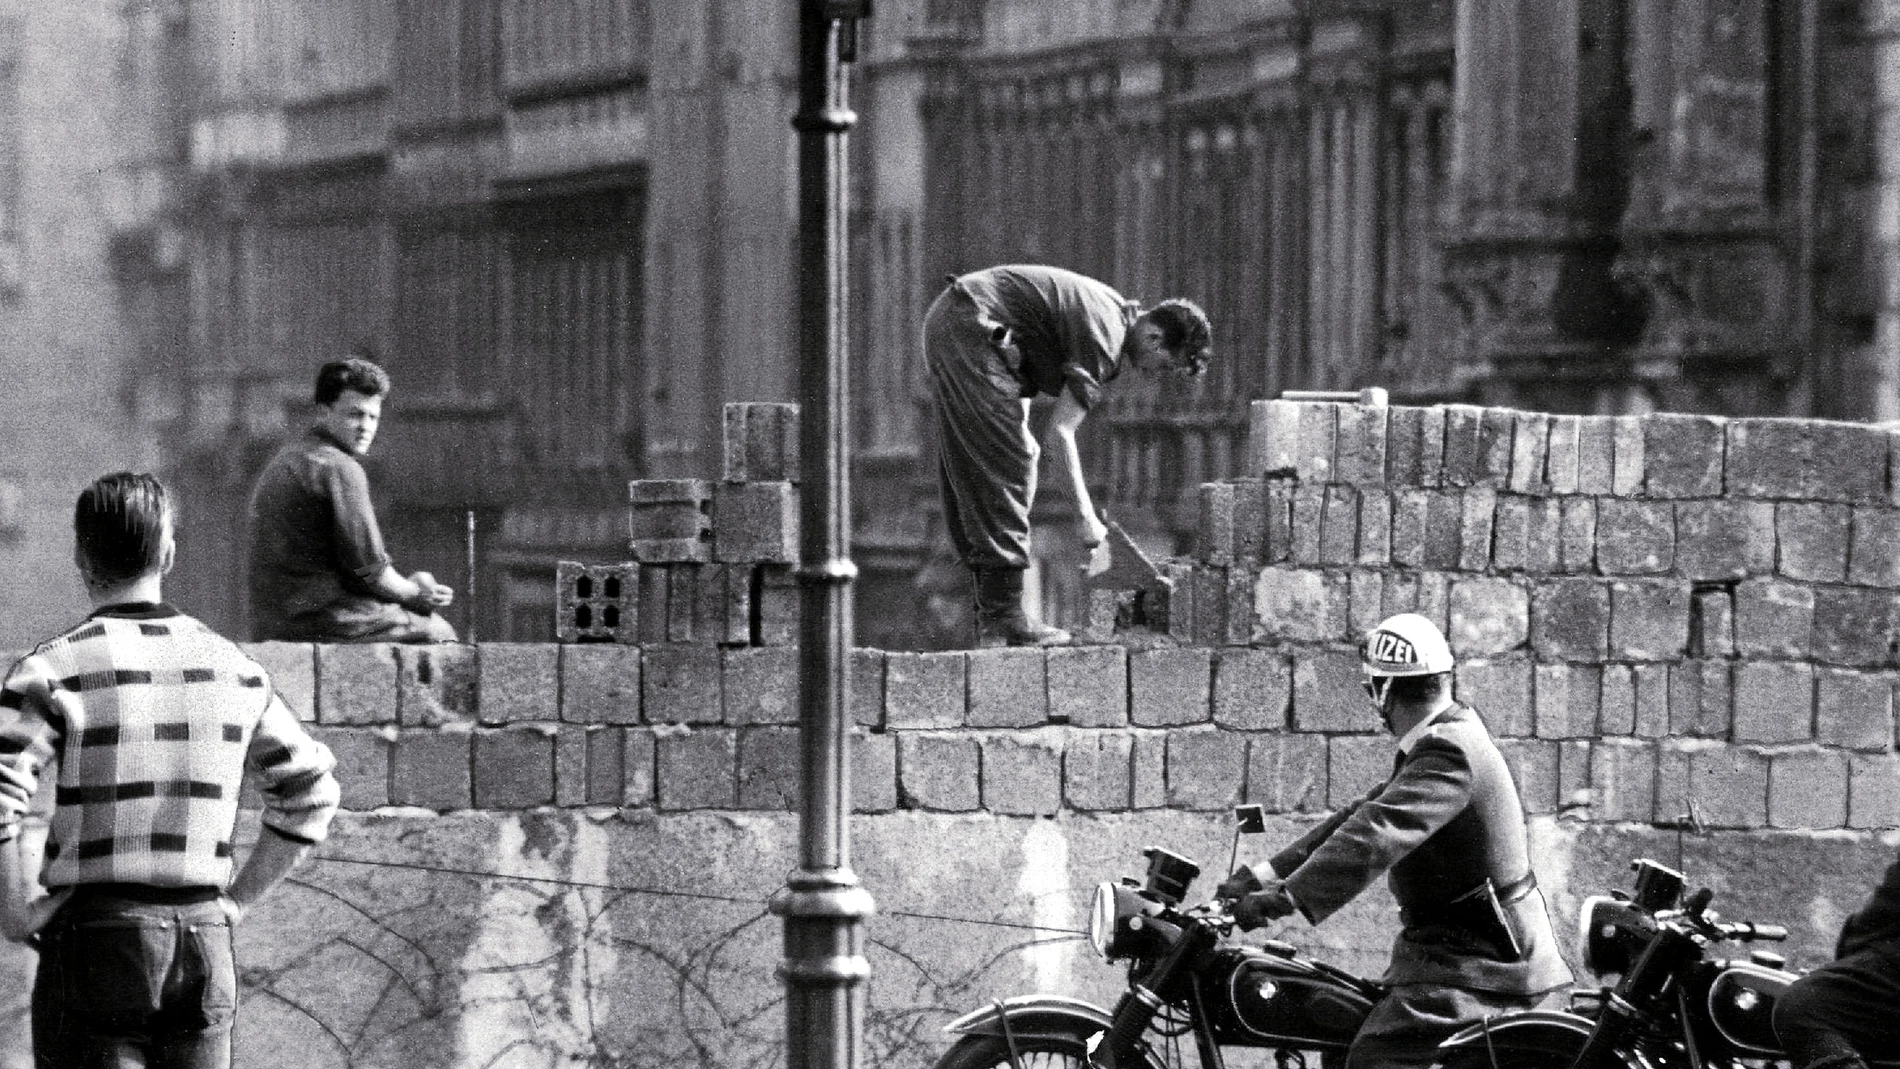 Imagen de agosto de 1961 en pleno levantamiento del Muro